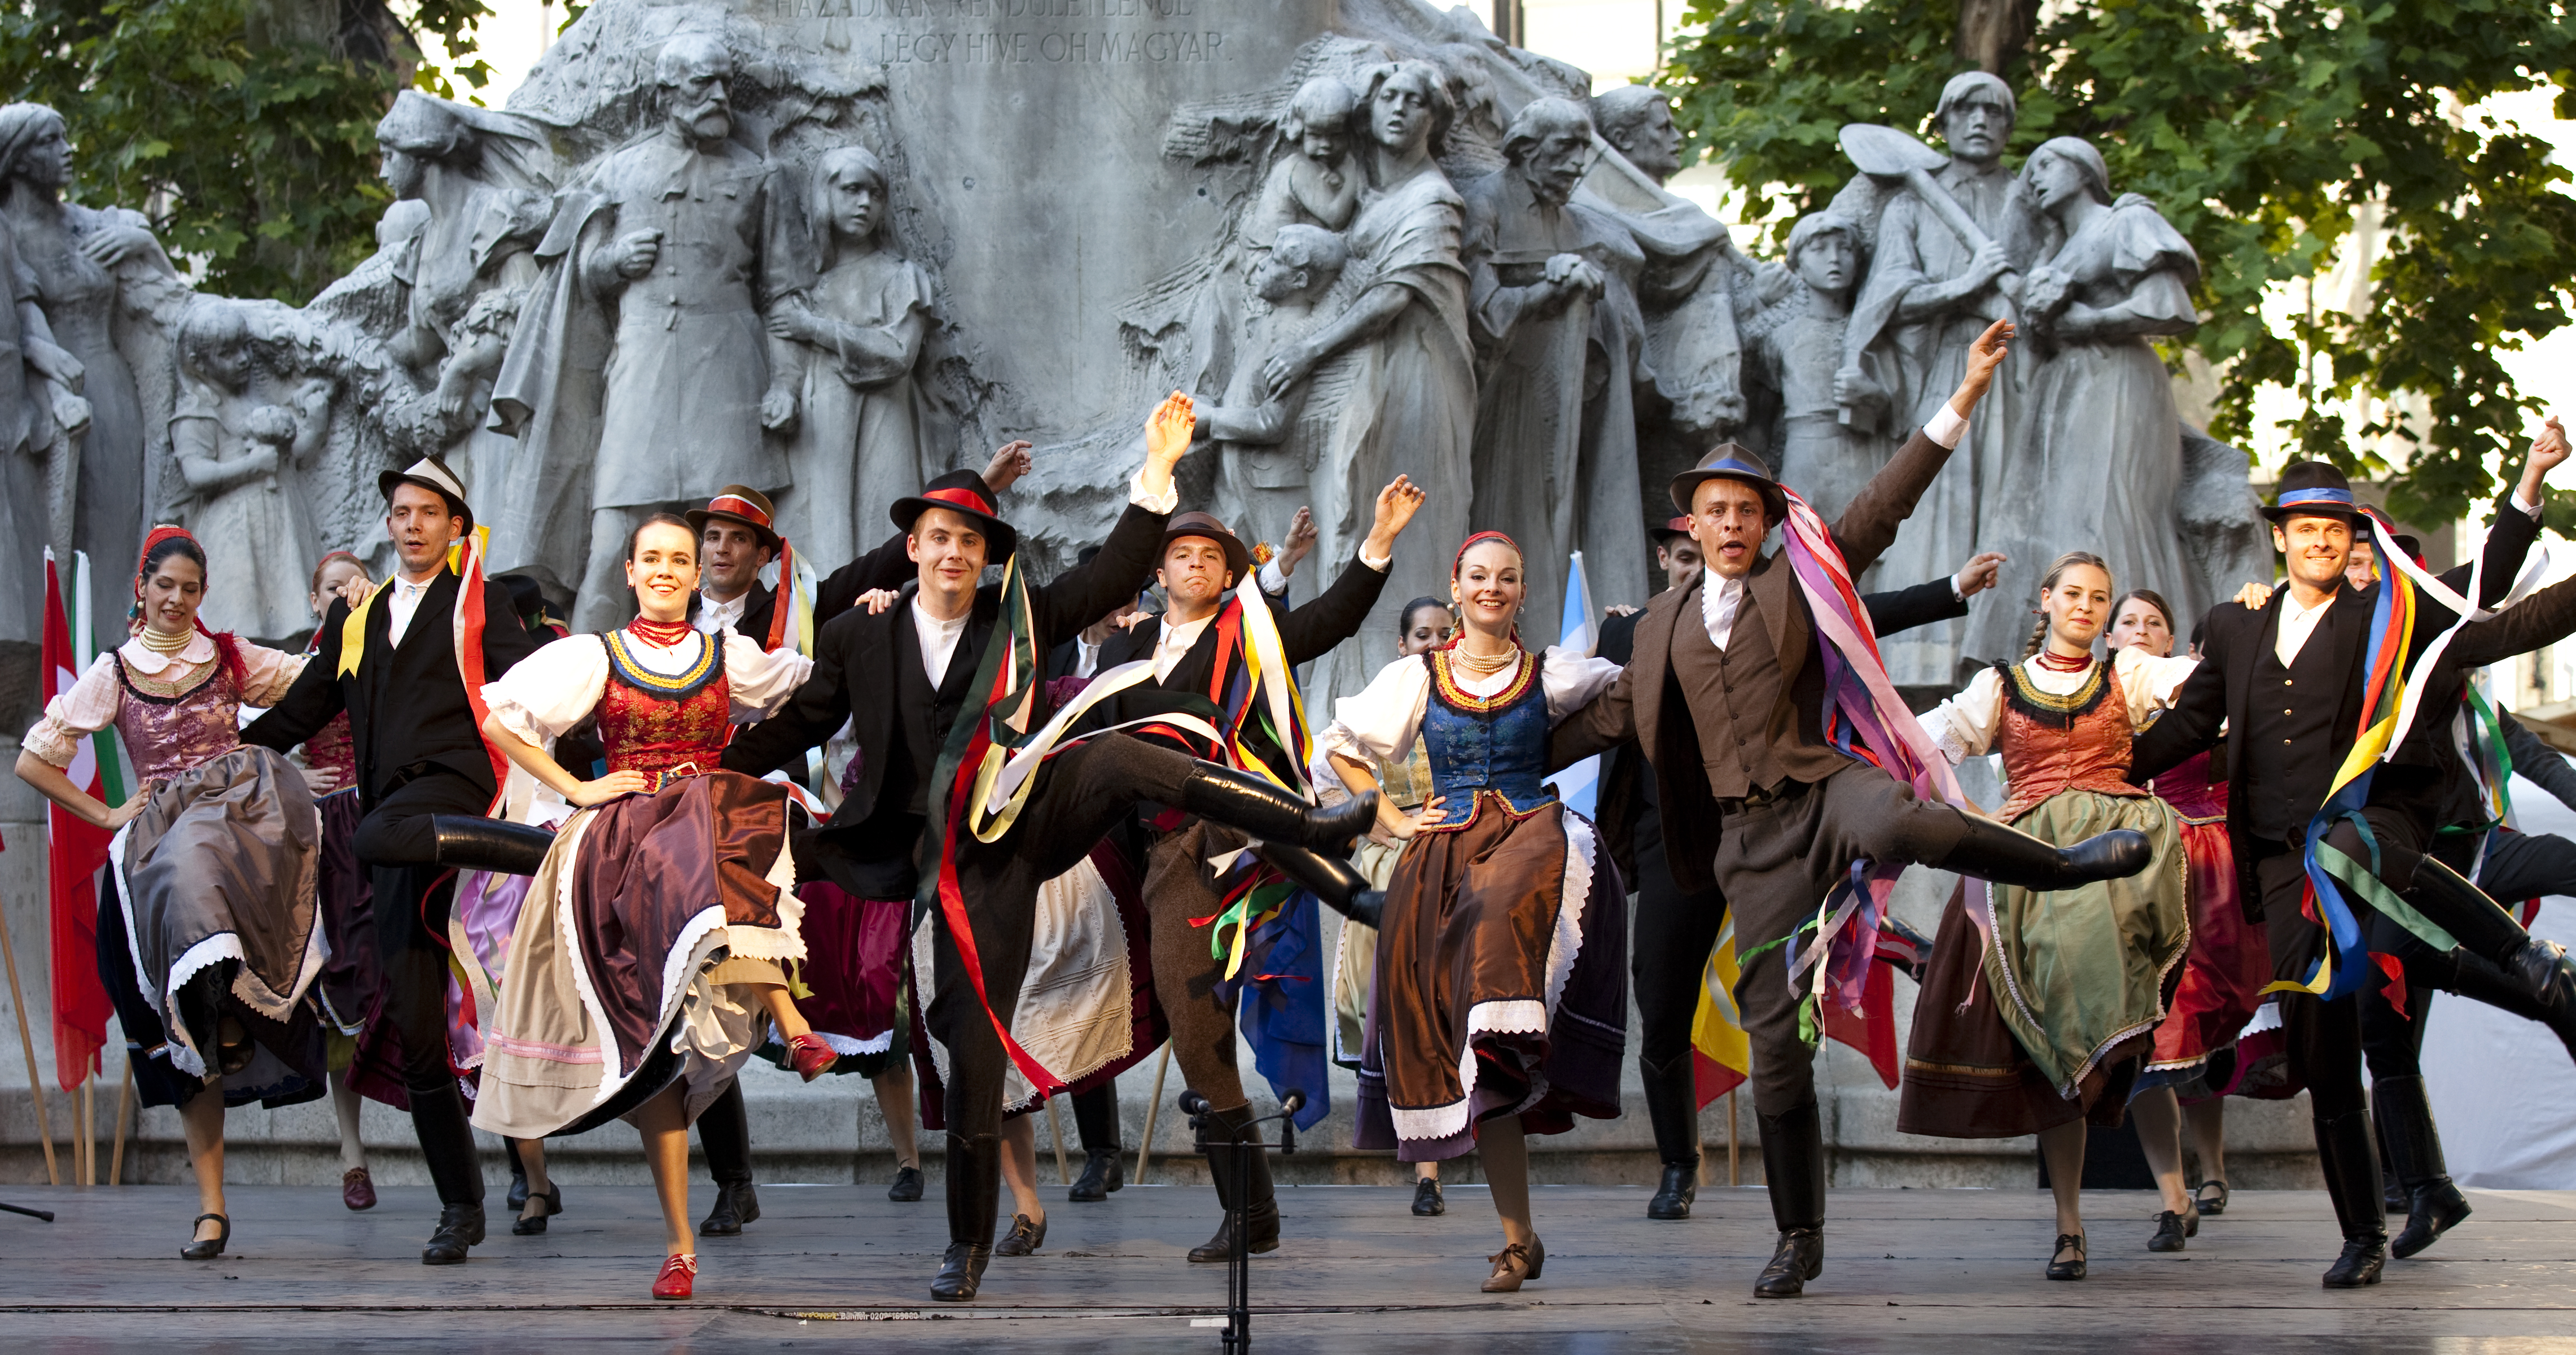 Táncos mulatság, hungarikumok, divatbemutató és margitszigeti gálaműsor – Érkezik a 27. Duna Karnevál